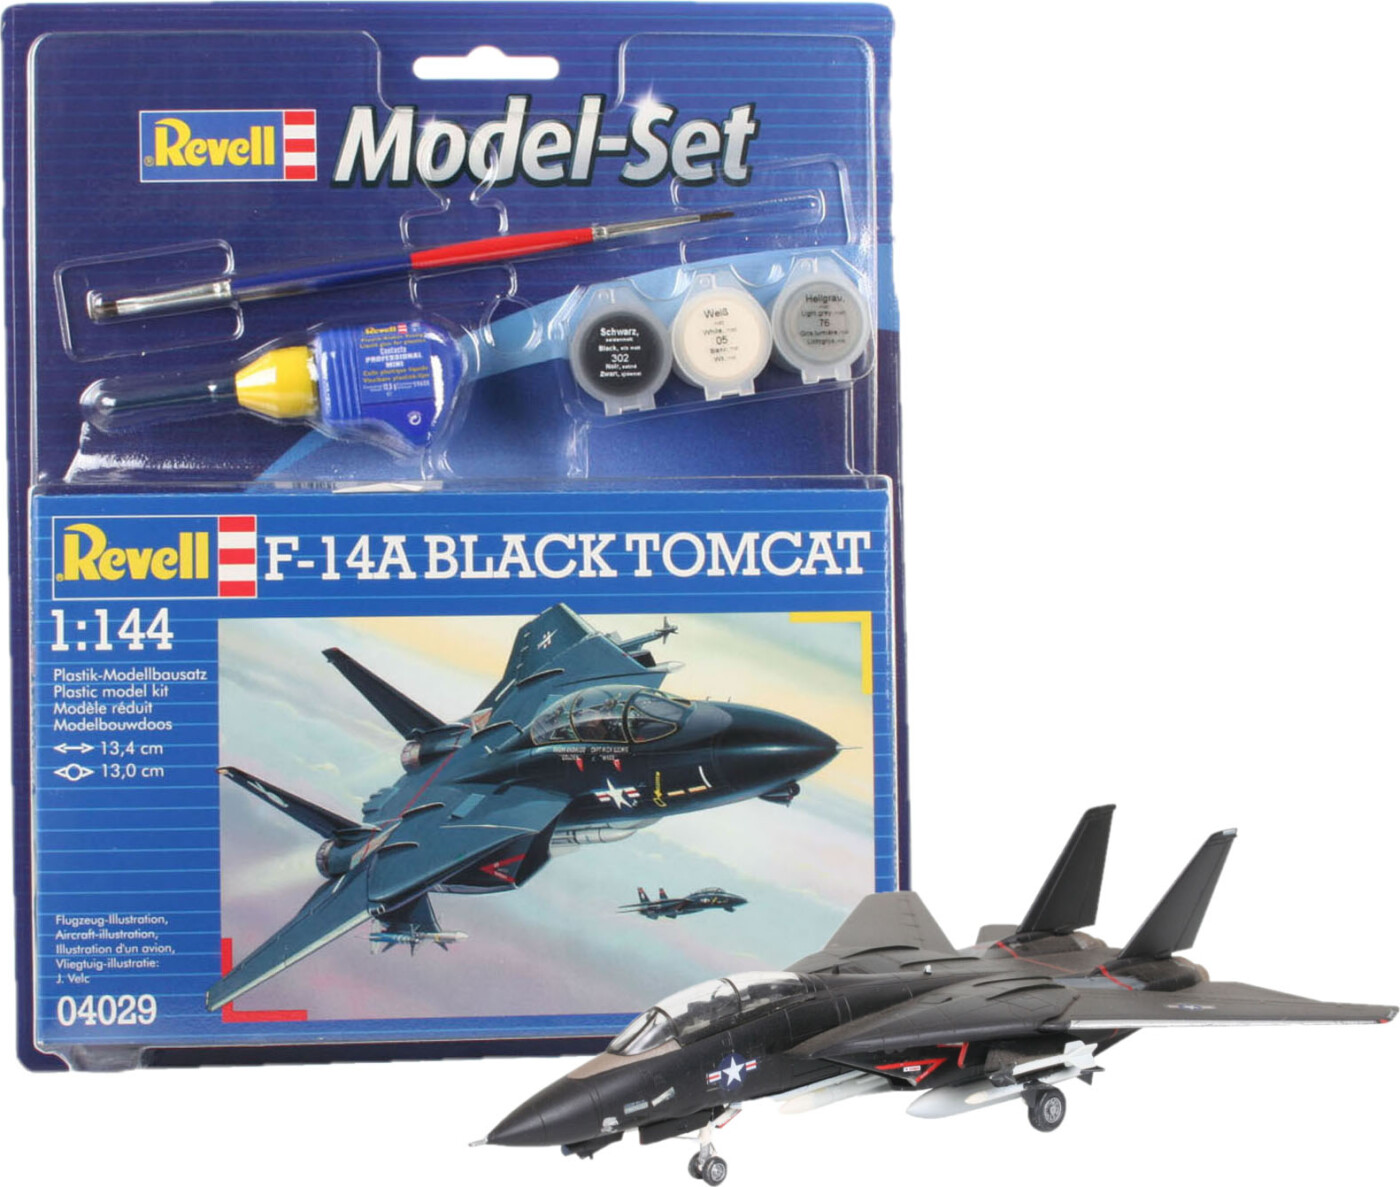 Billede af Revell - F-14a Black Tomcat Modelfly - 1:144 - 64029 hos Gucca.dk